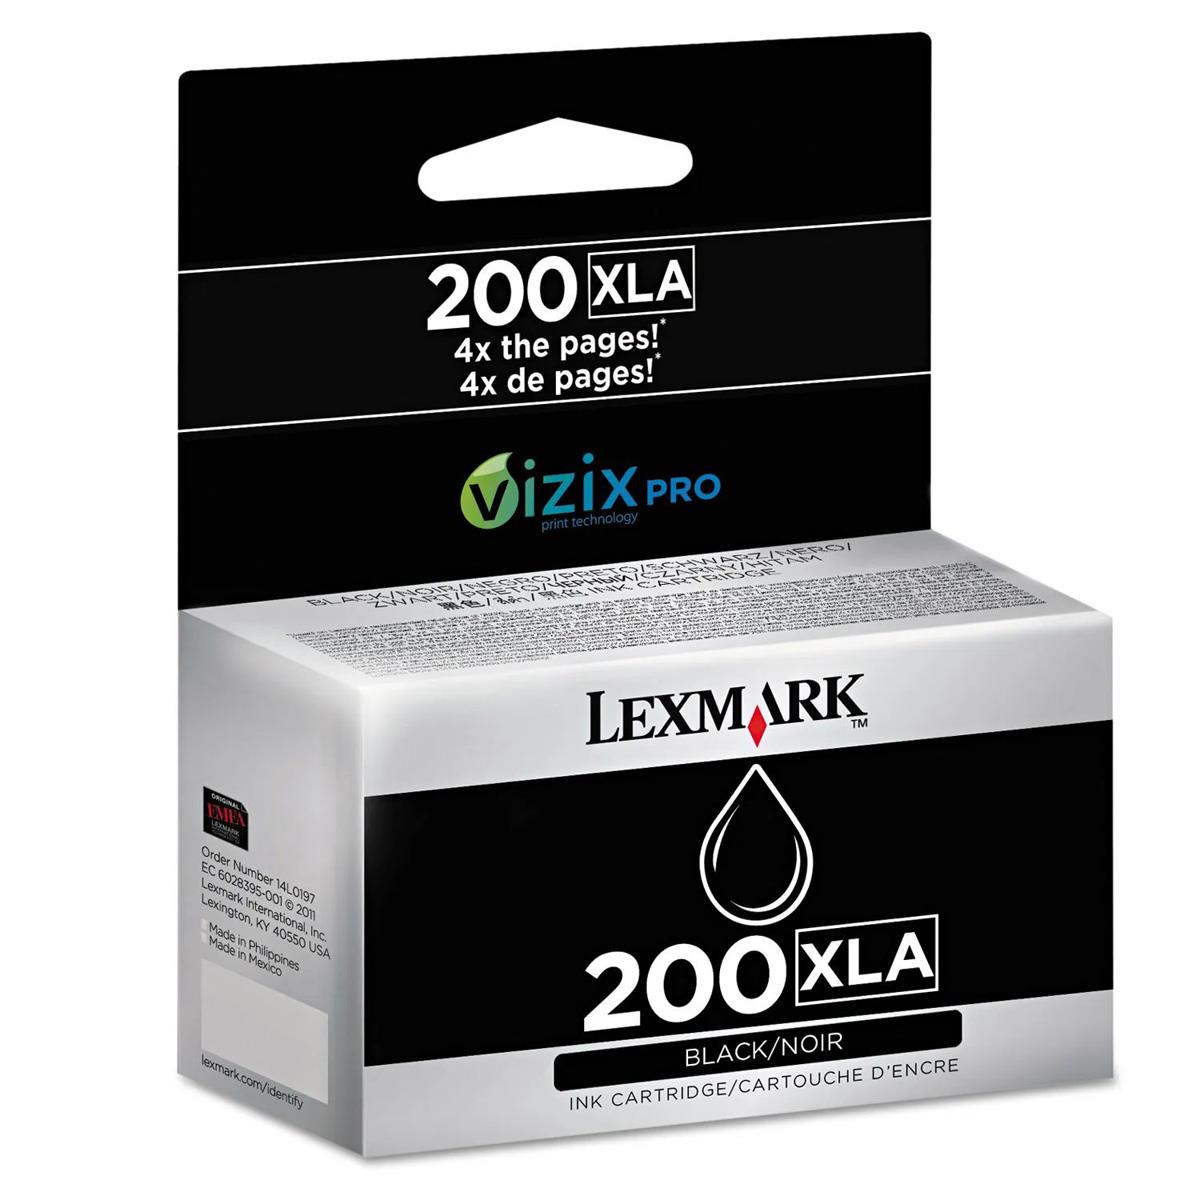 Image of Lexmark 200XLA Ink Cartridge